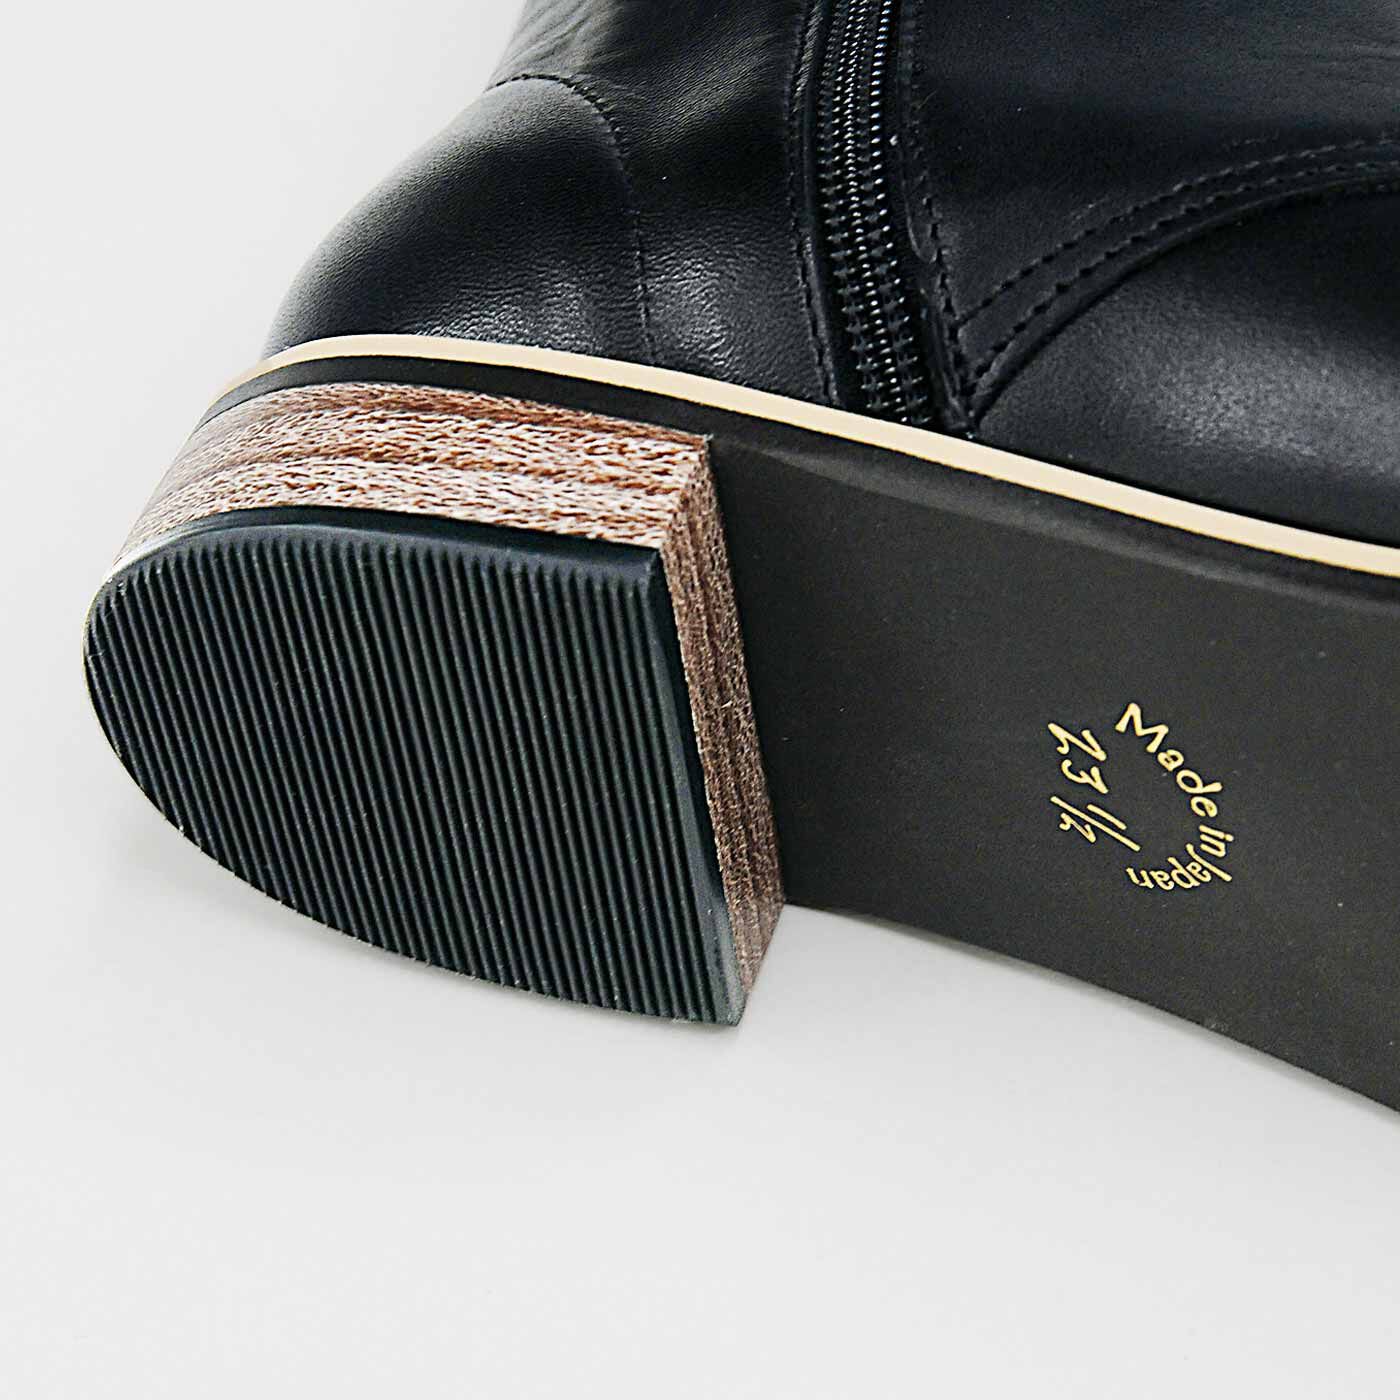 ＆Stories|長田靴職人が叶えた 理想の本革ウィングチップブーツ〈クラシックブラック〉[本革 ブーツ：日本製]|ヒールは歩きやすい約2.5cmにしました。